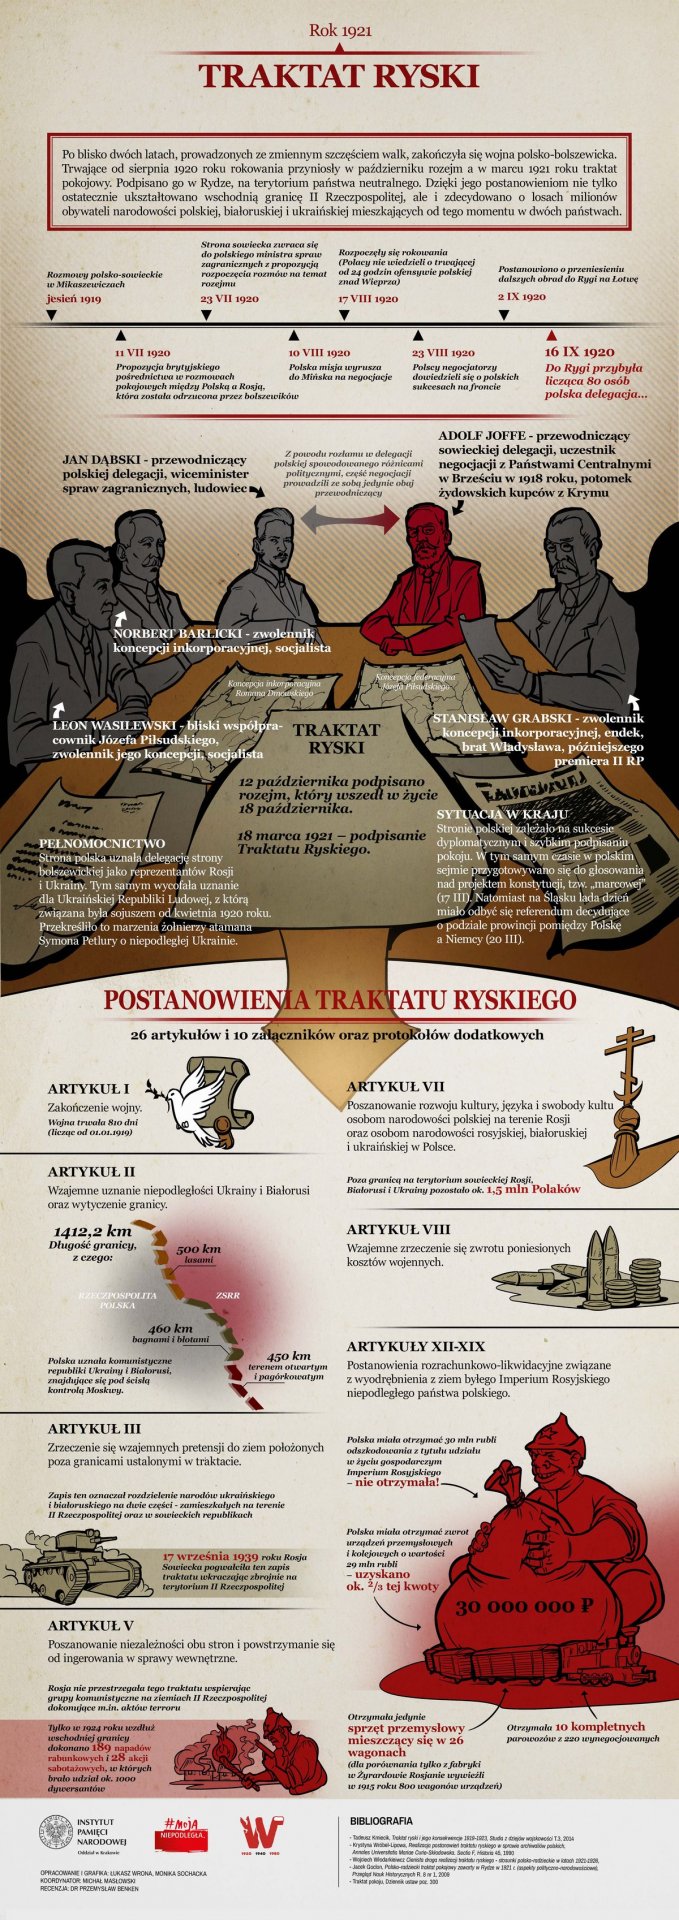 Traktat ryski, 1921